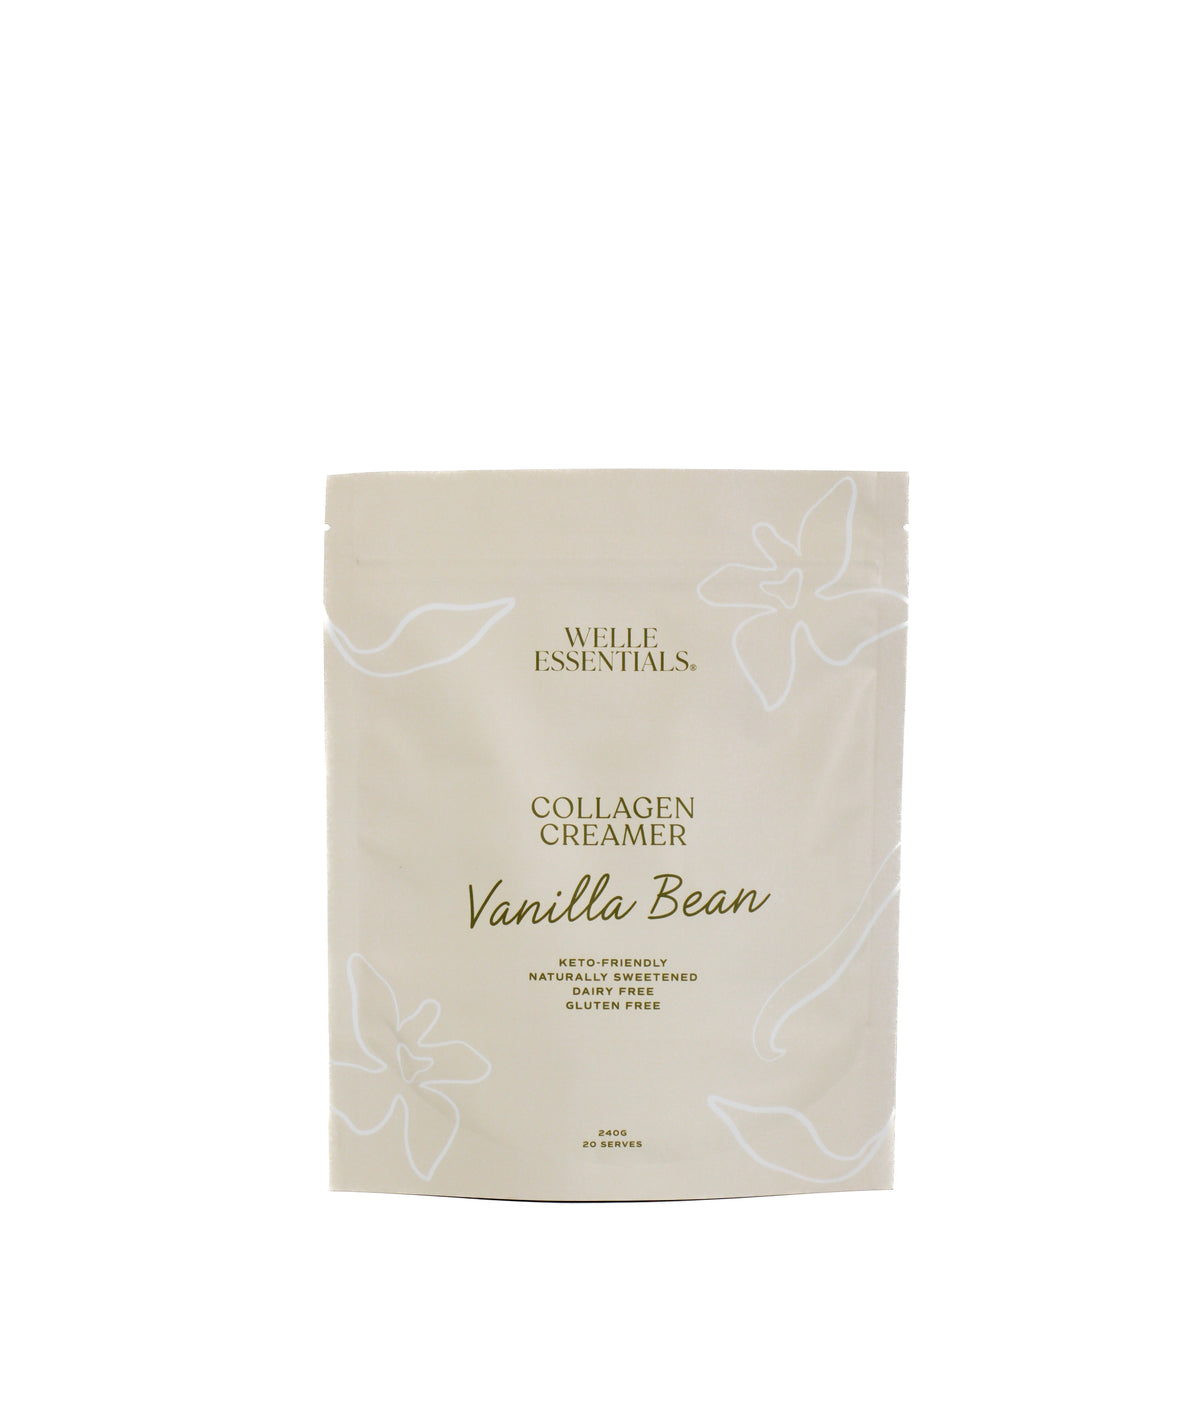 Collagen Creamer - Vanilla Bean